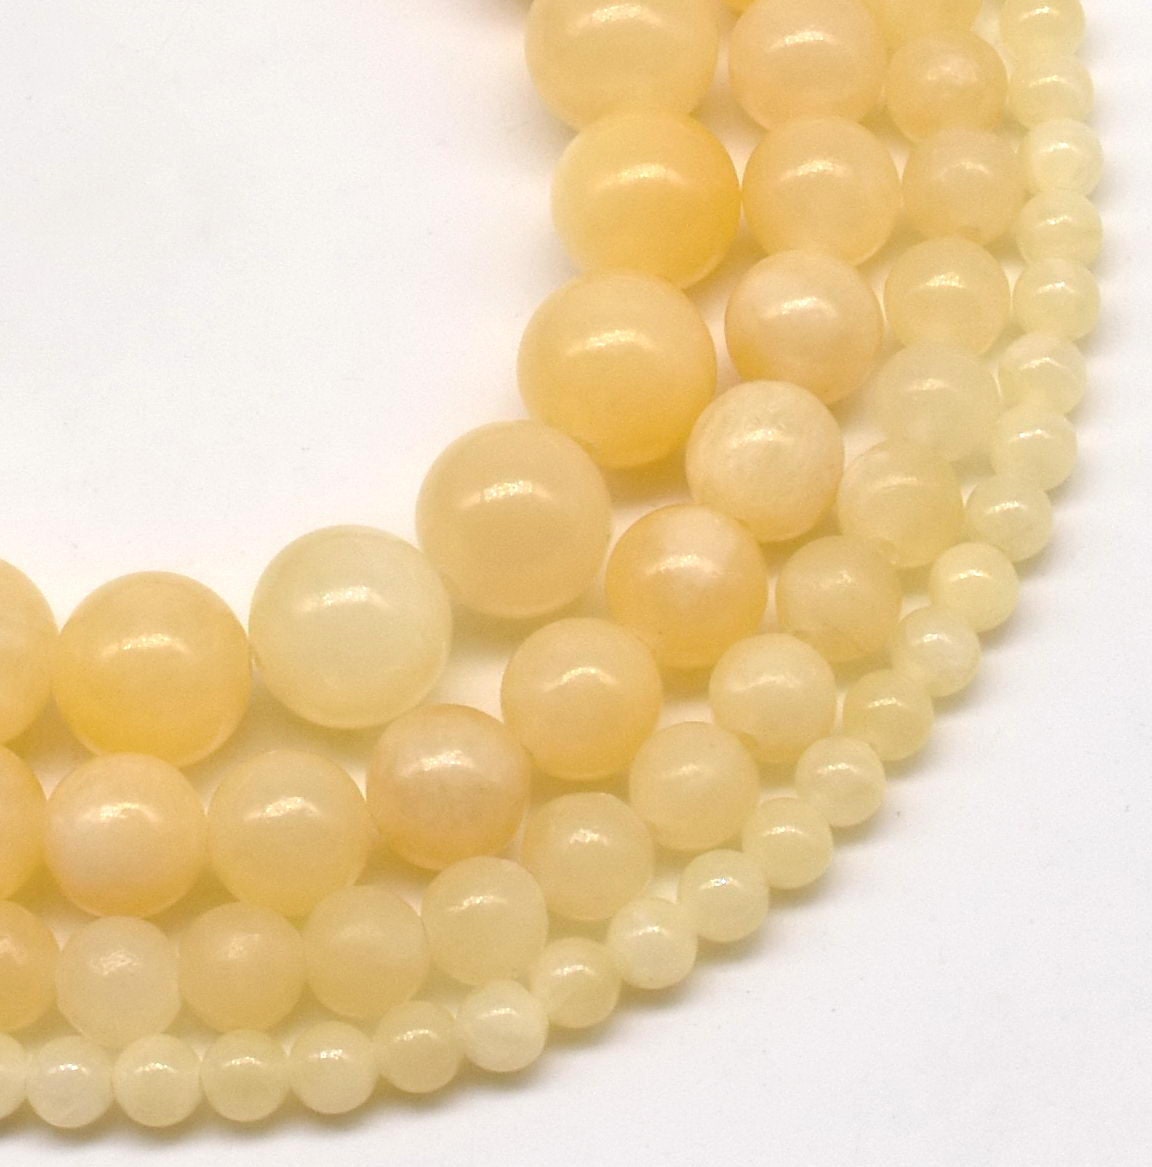 Zenkeeper 108 Pcs Yellow Jade Beads For Jewelry Making 8 Mm Yellow Jade  Gemstones Loose Stone Beads